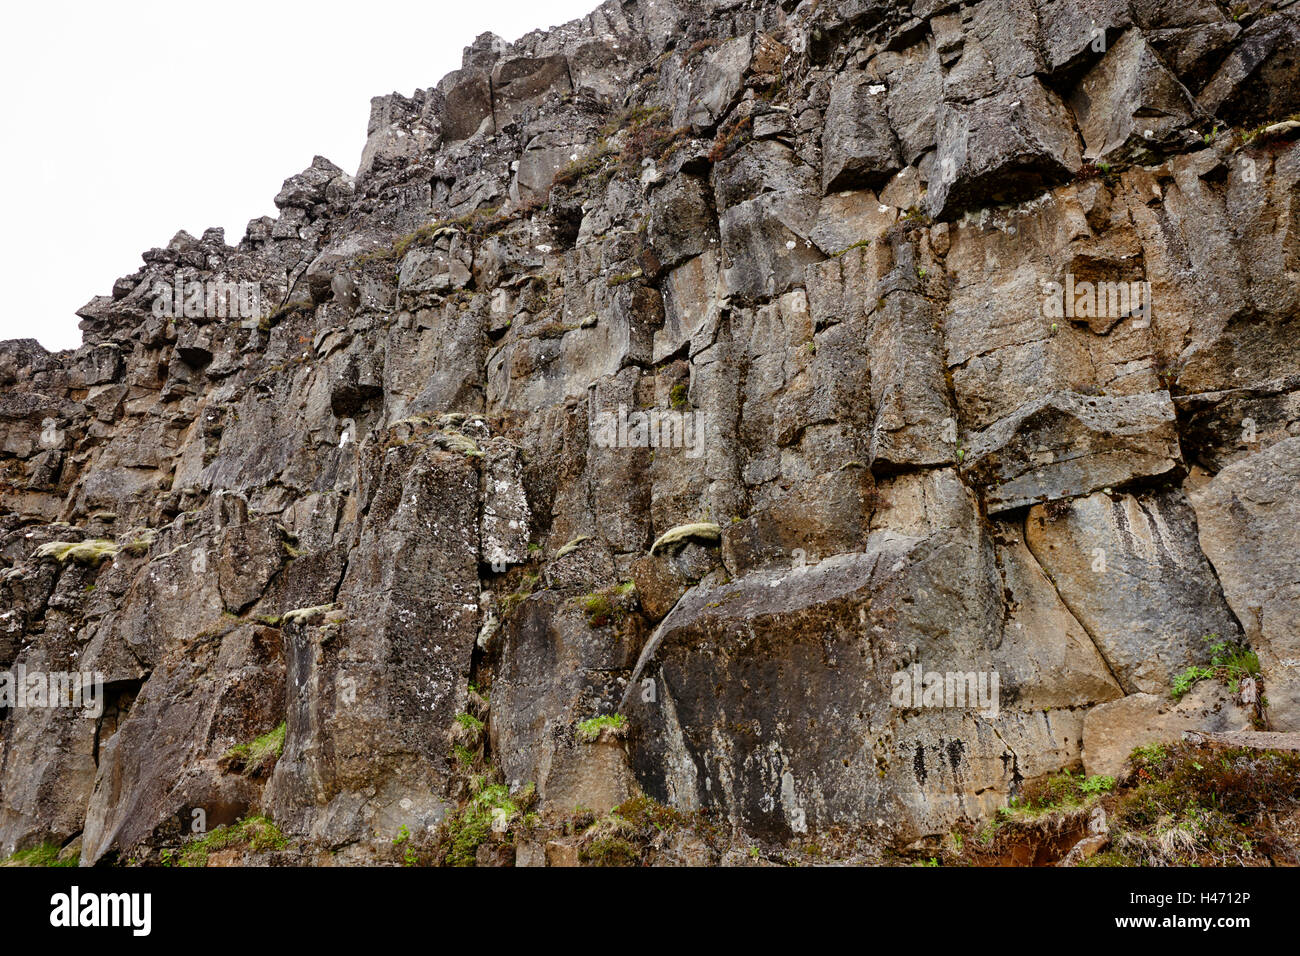 Mur de pierre de lave dans les fissures dans les plaques continentales au parc national de thingvellir Islande Banque D'Images